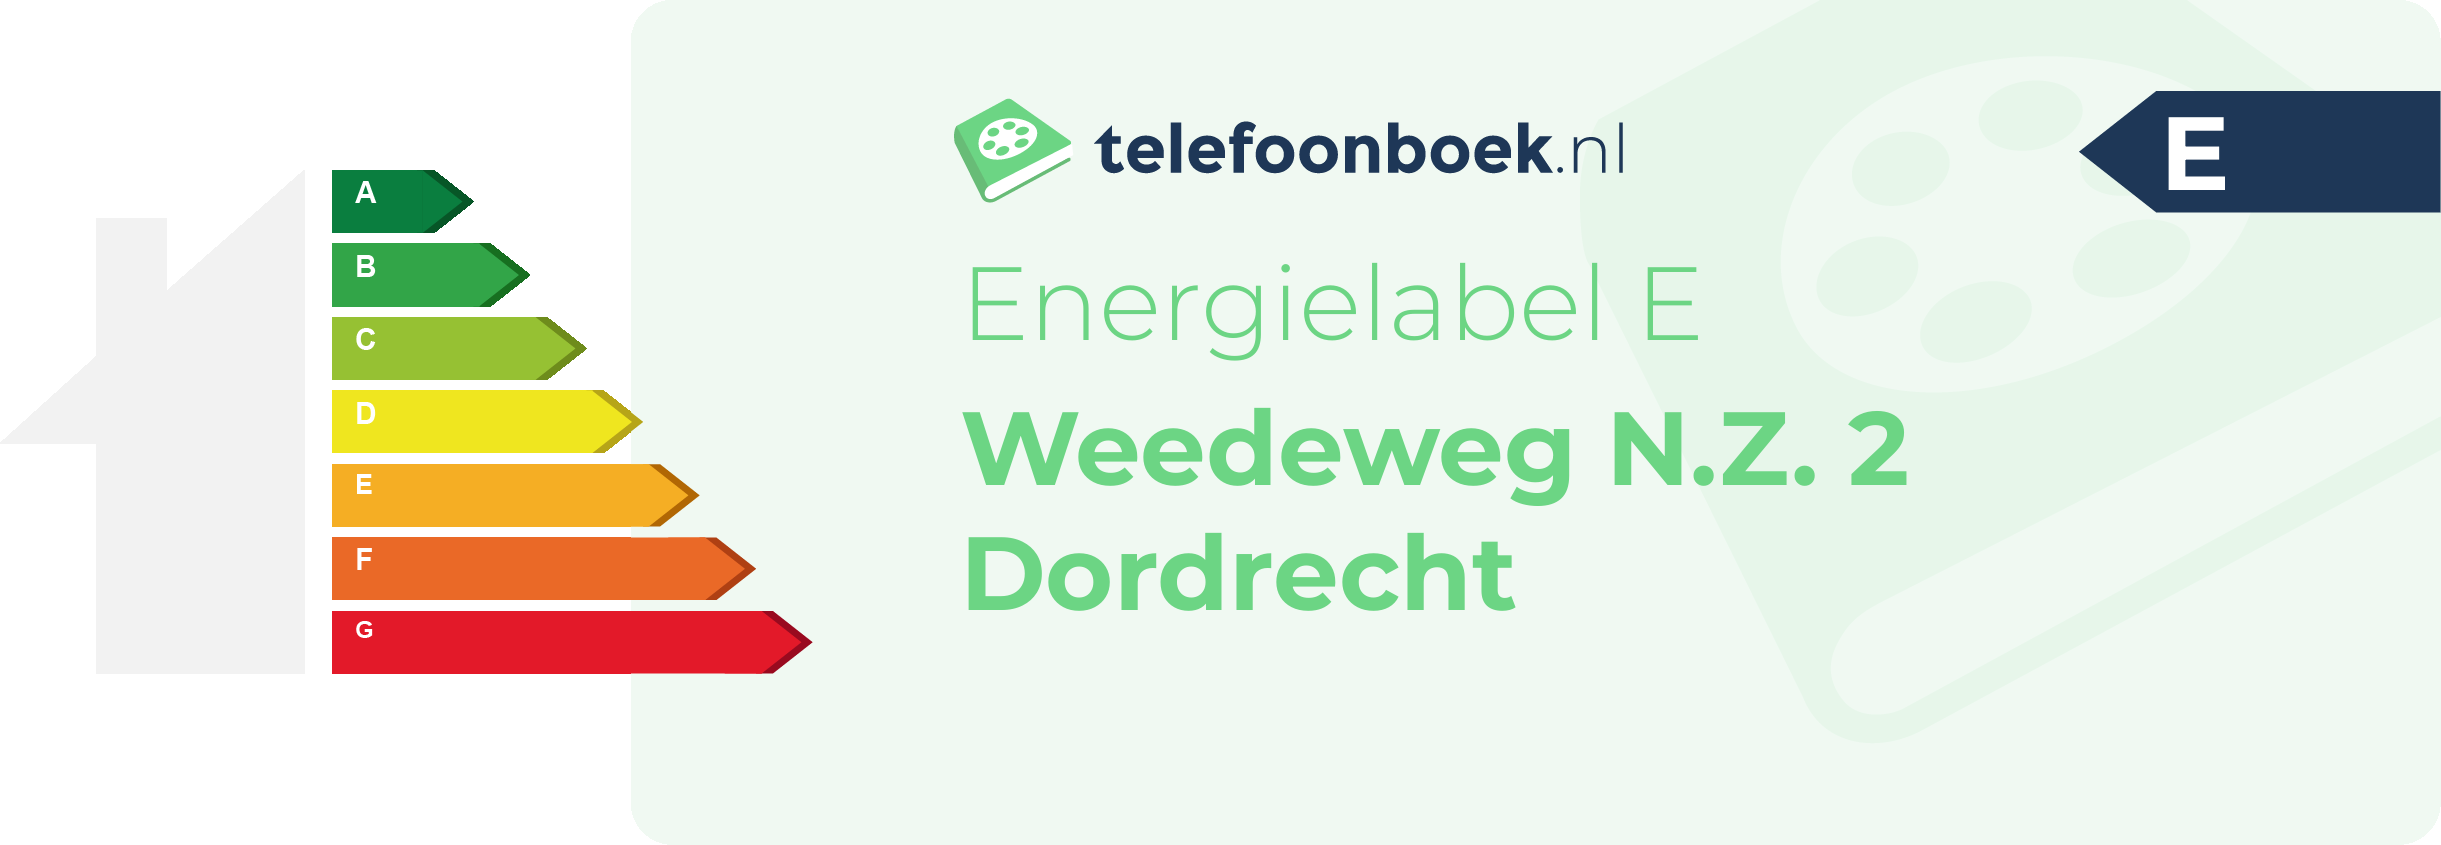 Energielabel Weedeweg N.Z. 2 Dordrecht